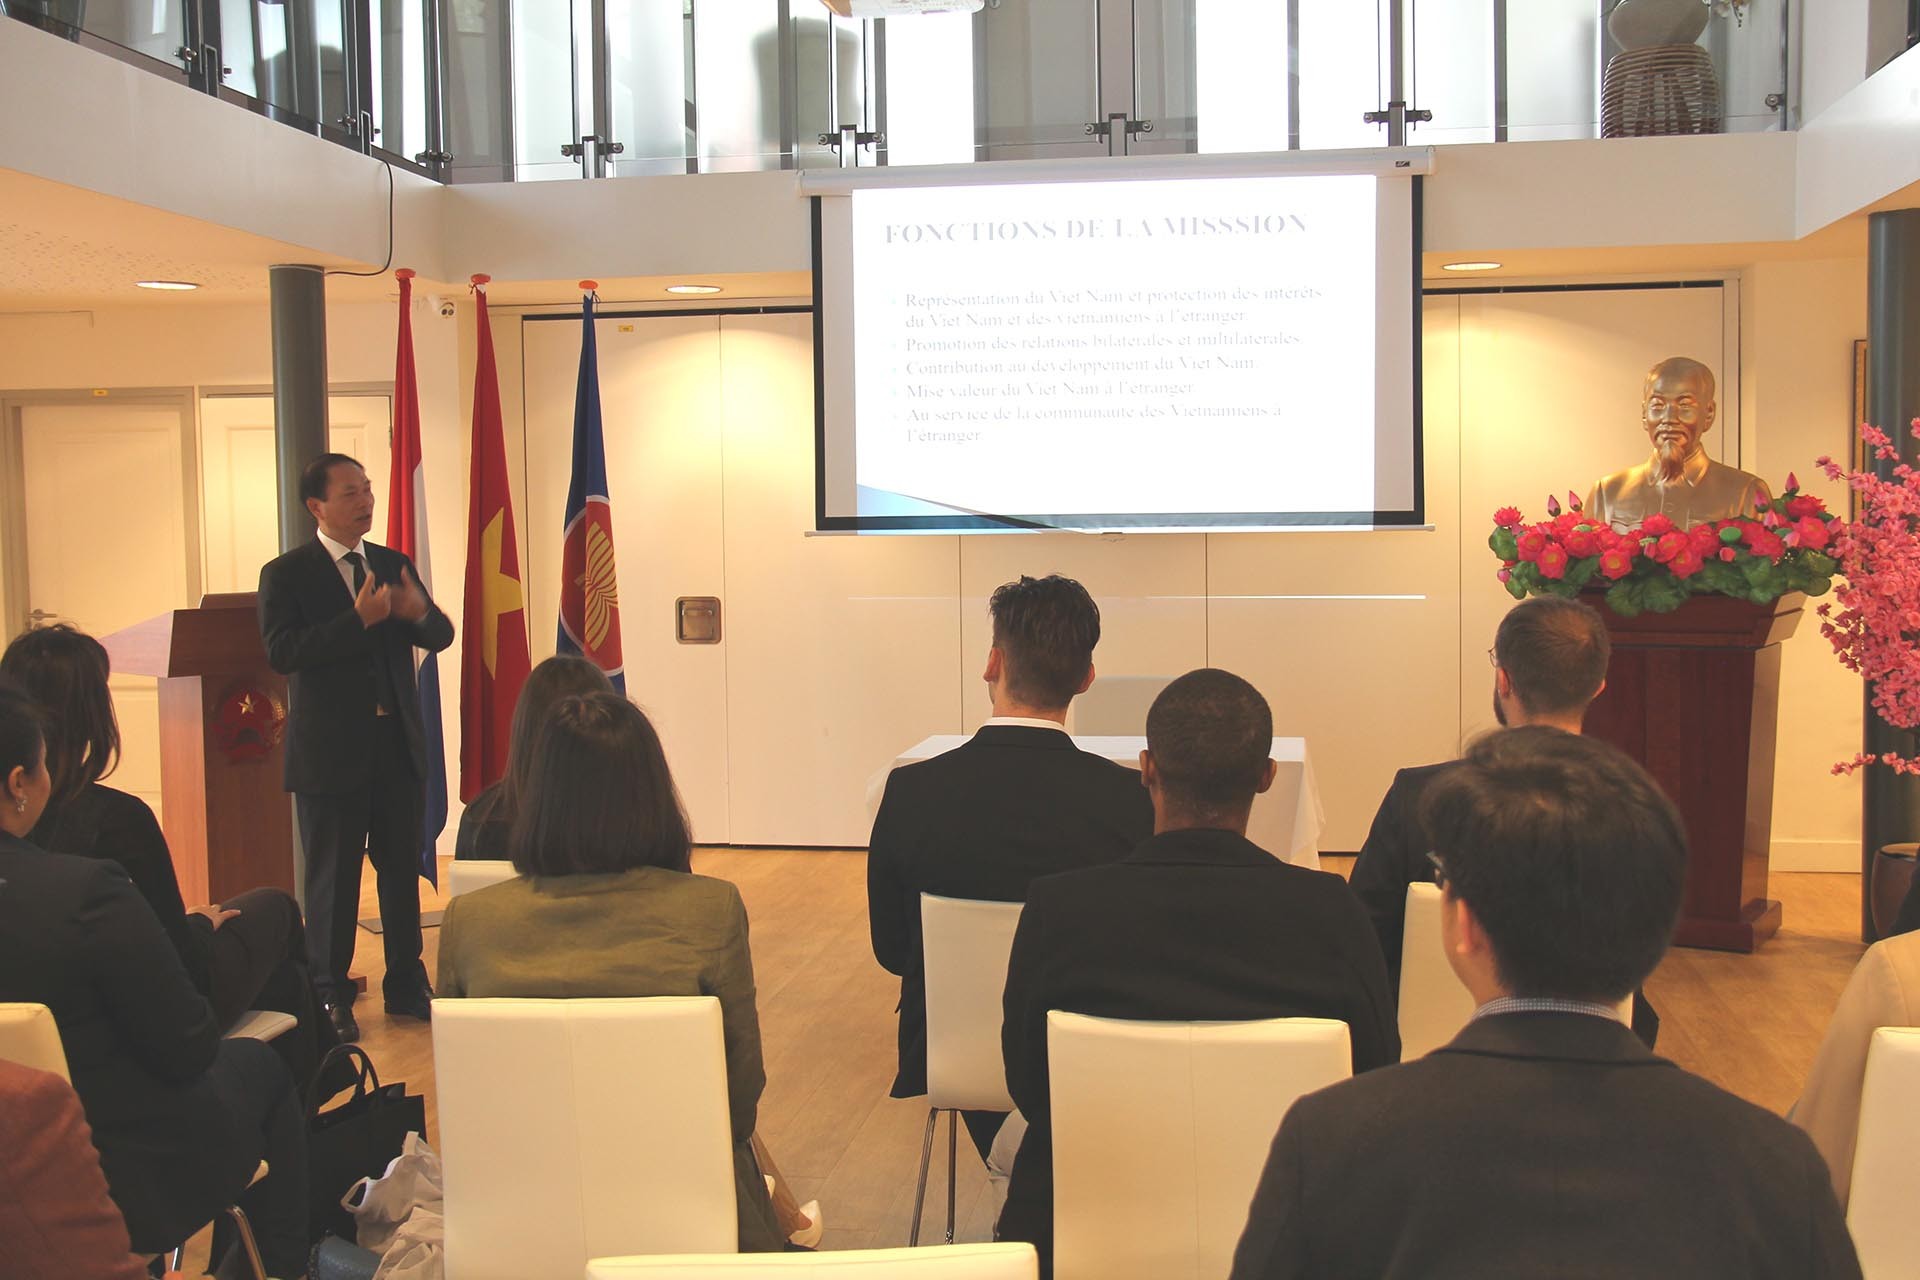 Đại sứ Phạm Việt Anh đã trao đổi với học viên về những quan điểm lớn trong chính sách đối ngoại Việt Nam, những trụ cột cơ bản của ngoại giao Việt Nam.